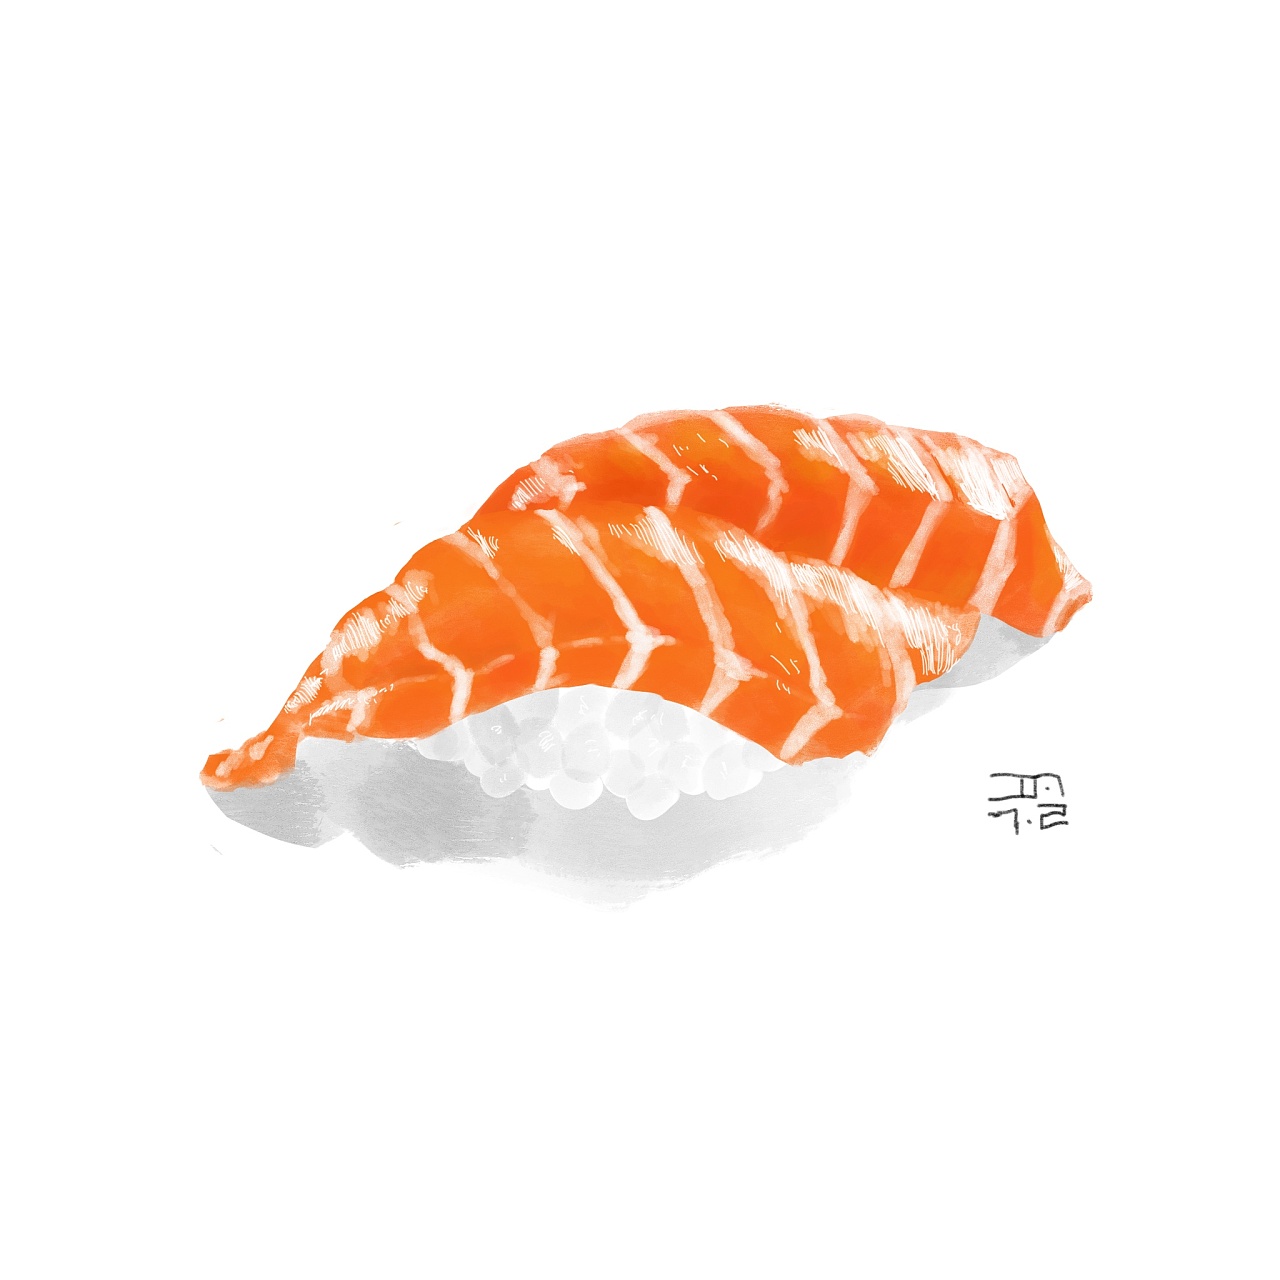 手绘寿司